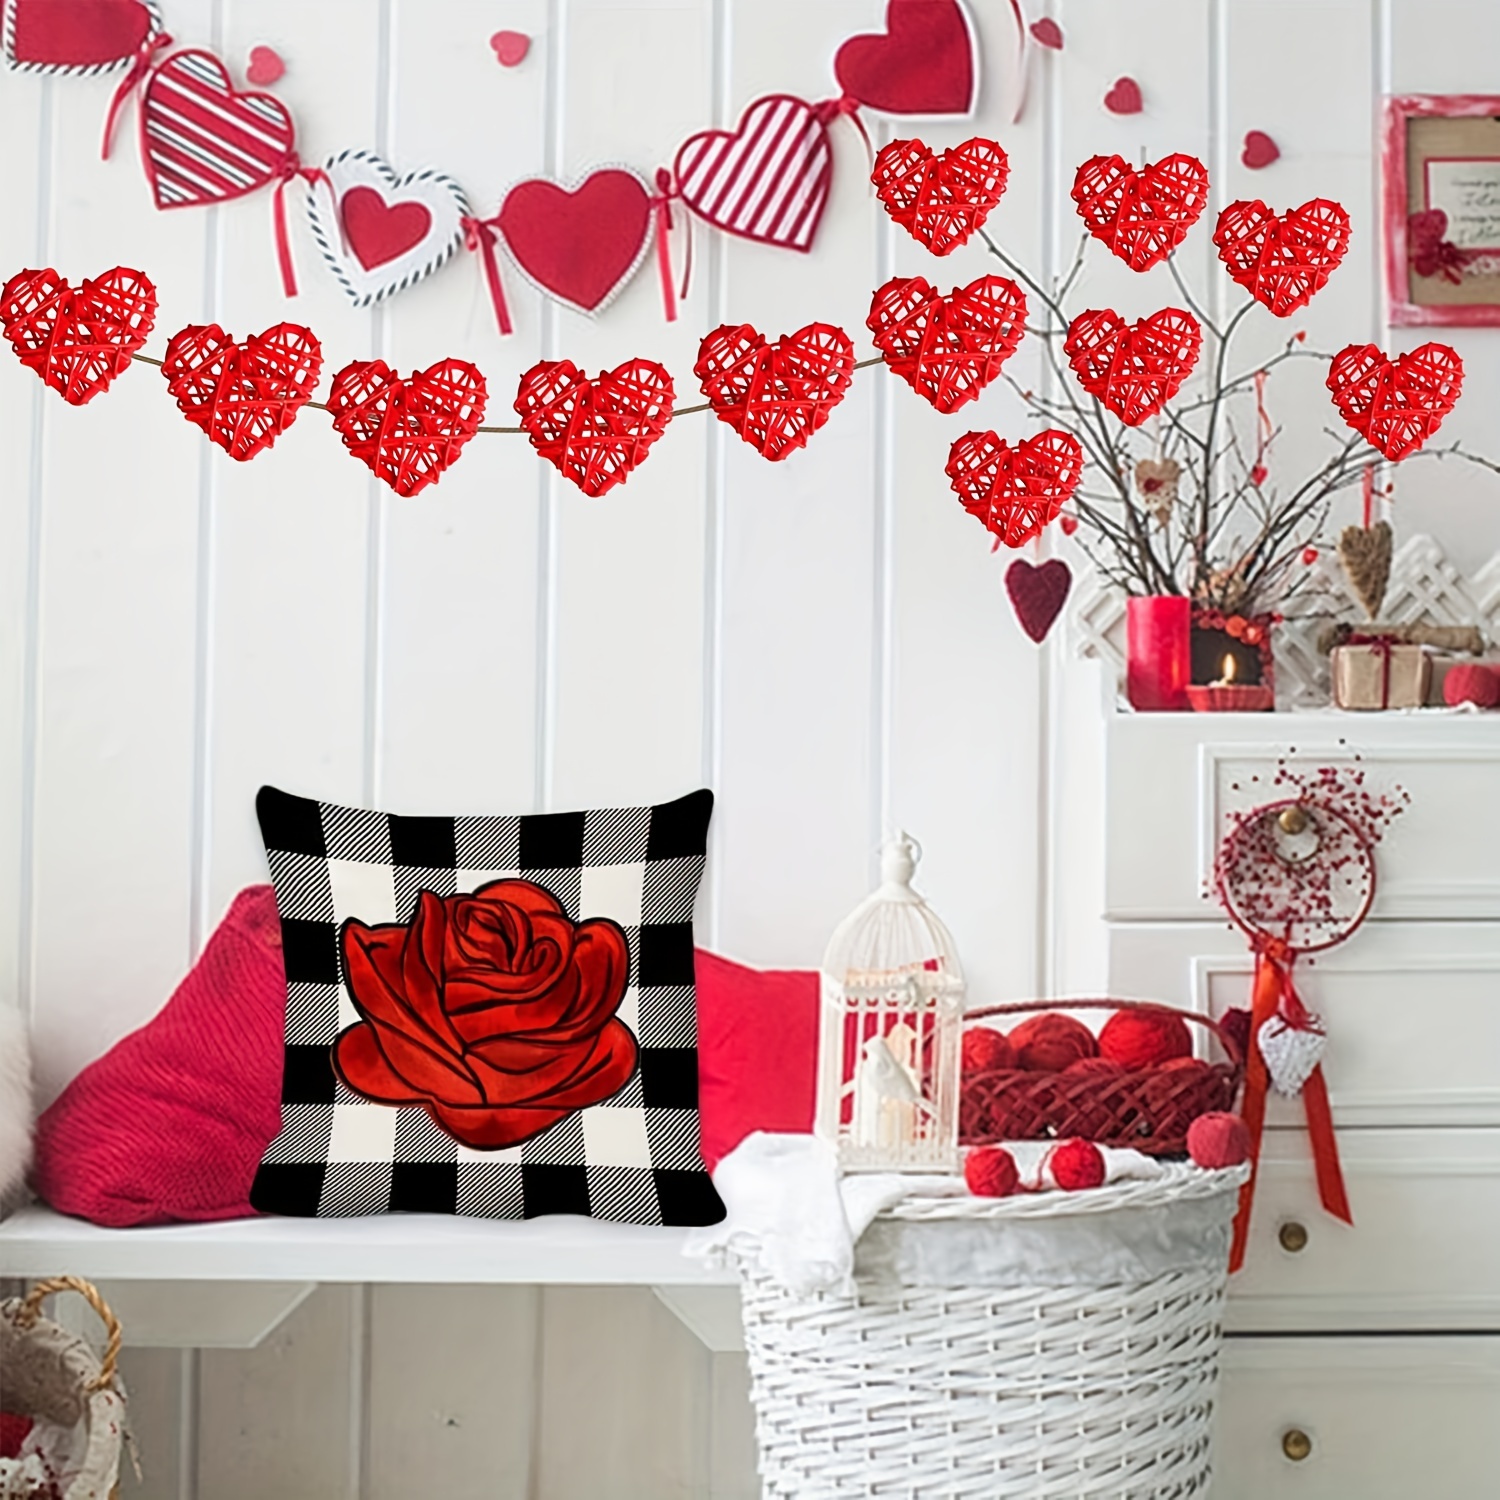 30 Pcs Wicker Rattan Heart Shaped Balls 2.36 Inches DIY Craft Vase Filler  Valentines Day Vase Filler Decor Balls Red Pink Rose Red Decorative Vase